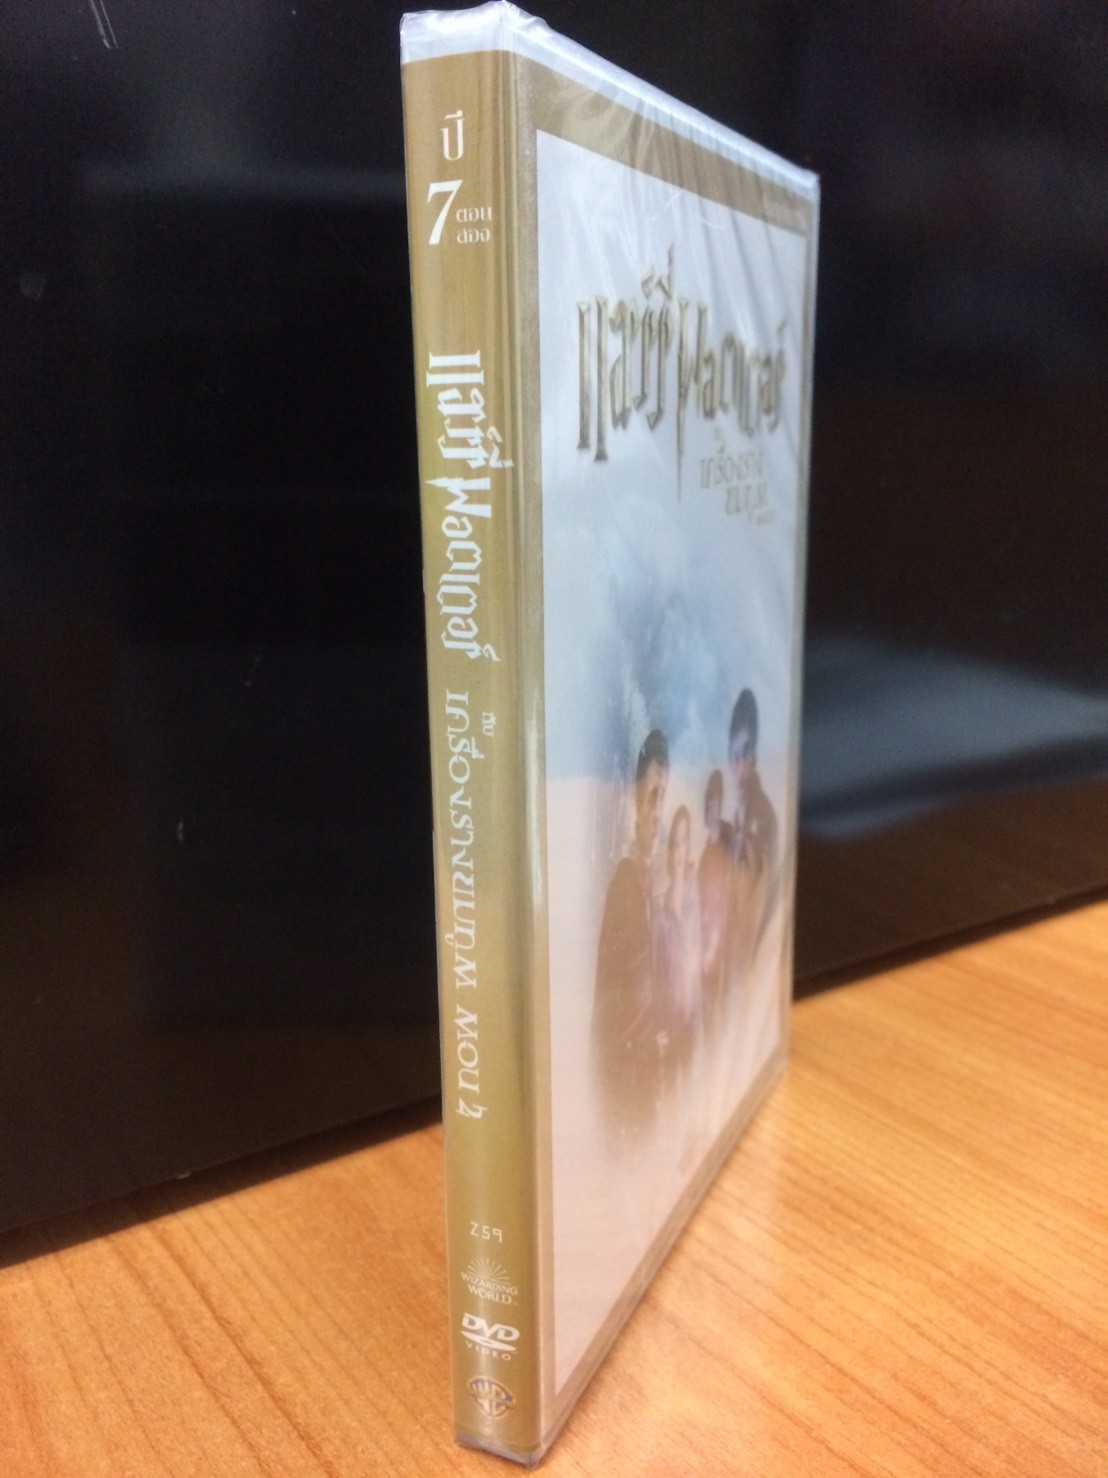 DVDหนัง แฮรี่พอตเตอร์ กับเครื่องรางยมทูต ตอน2 (DVDTHAI69170-แฮรี่พอตเตอร์กับเครื่องรางยมทูตตอน2) พากย์ไทย เท่านั้น หนังแฟนตาซี พ่อมด หนัง ดีวีดี แผ่นหนัง ดูหนัง หนังดี แบบกล่อง มาสเตอร์แท้  STARMART